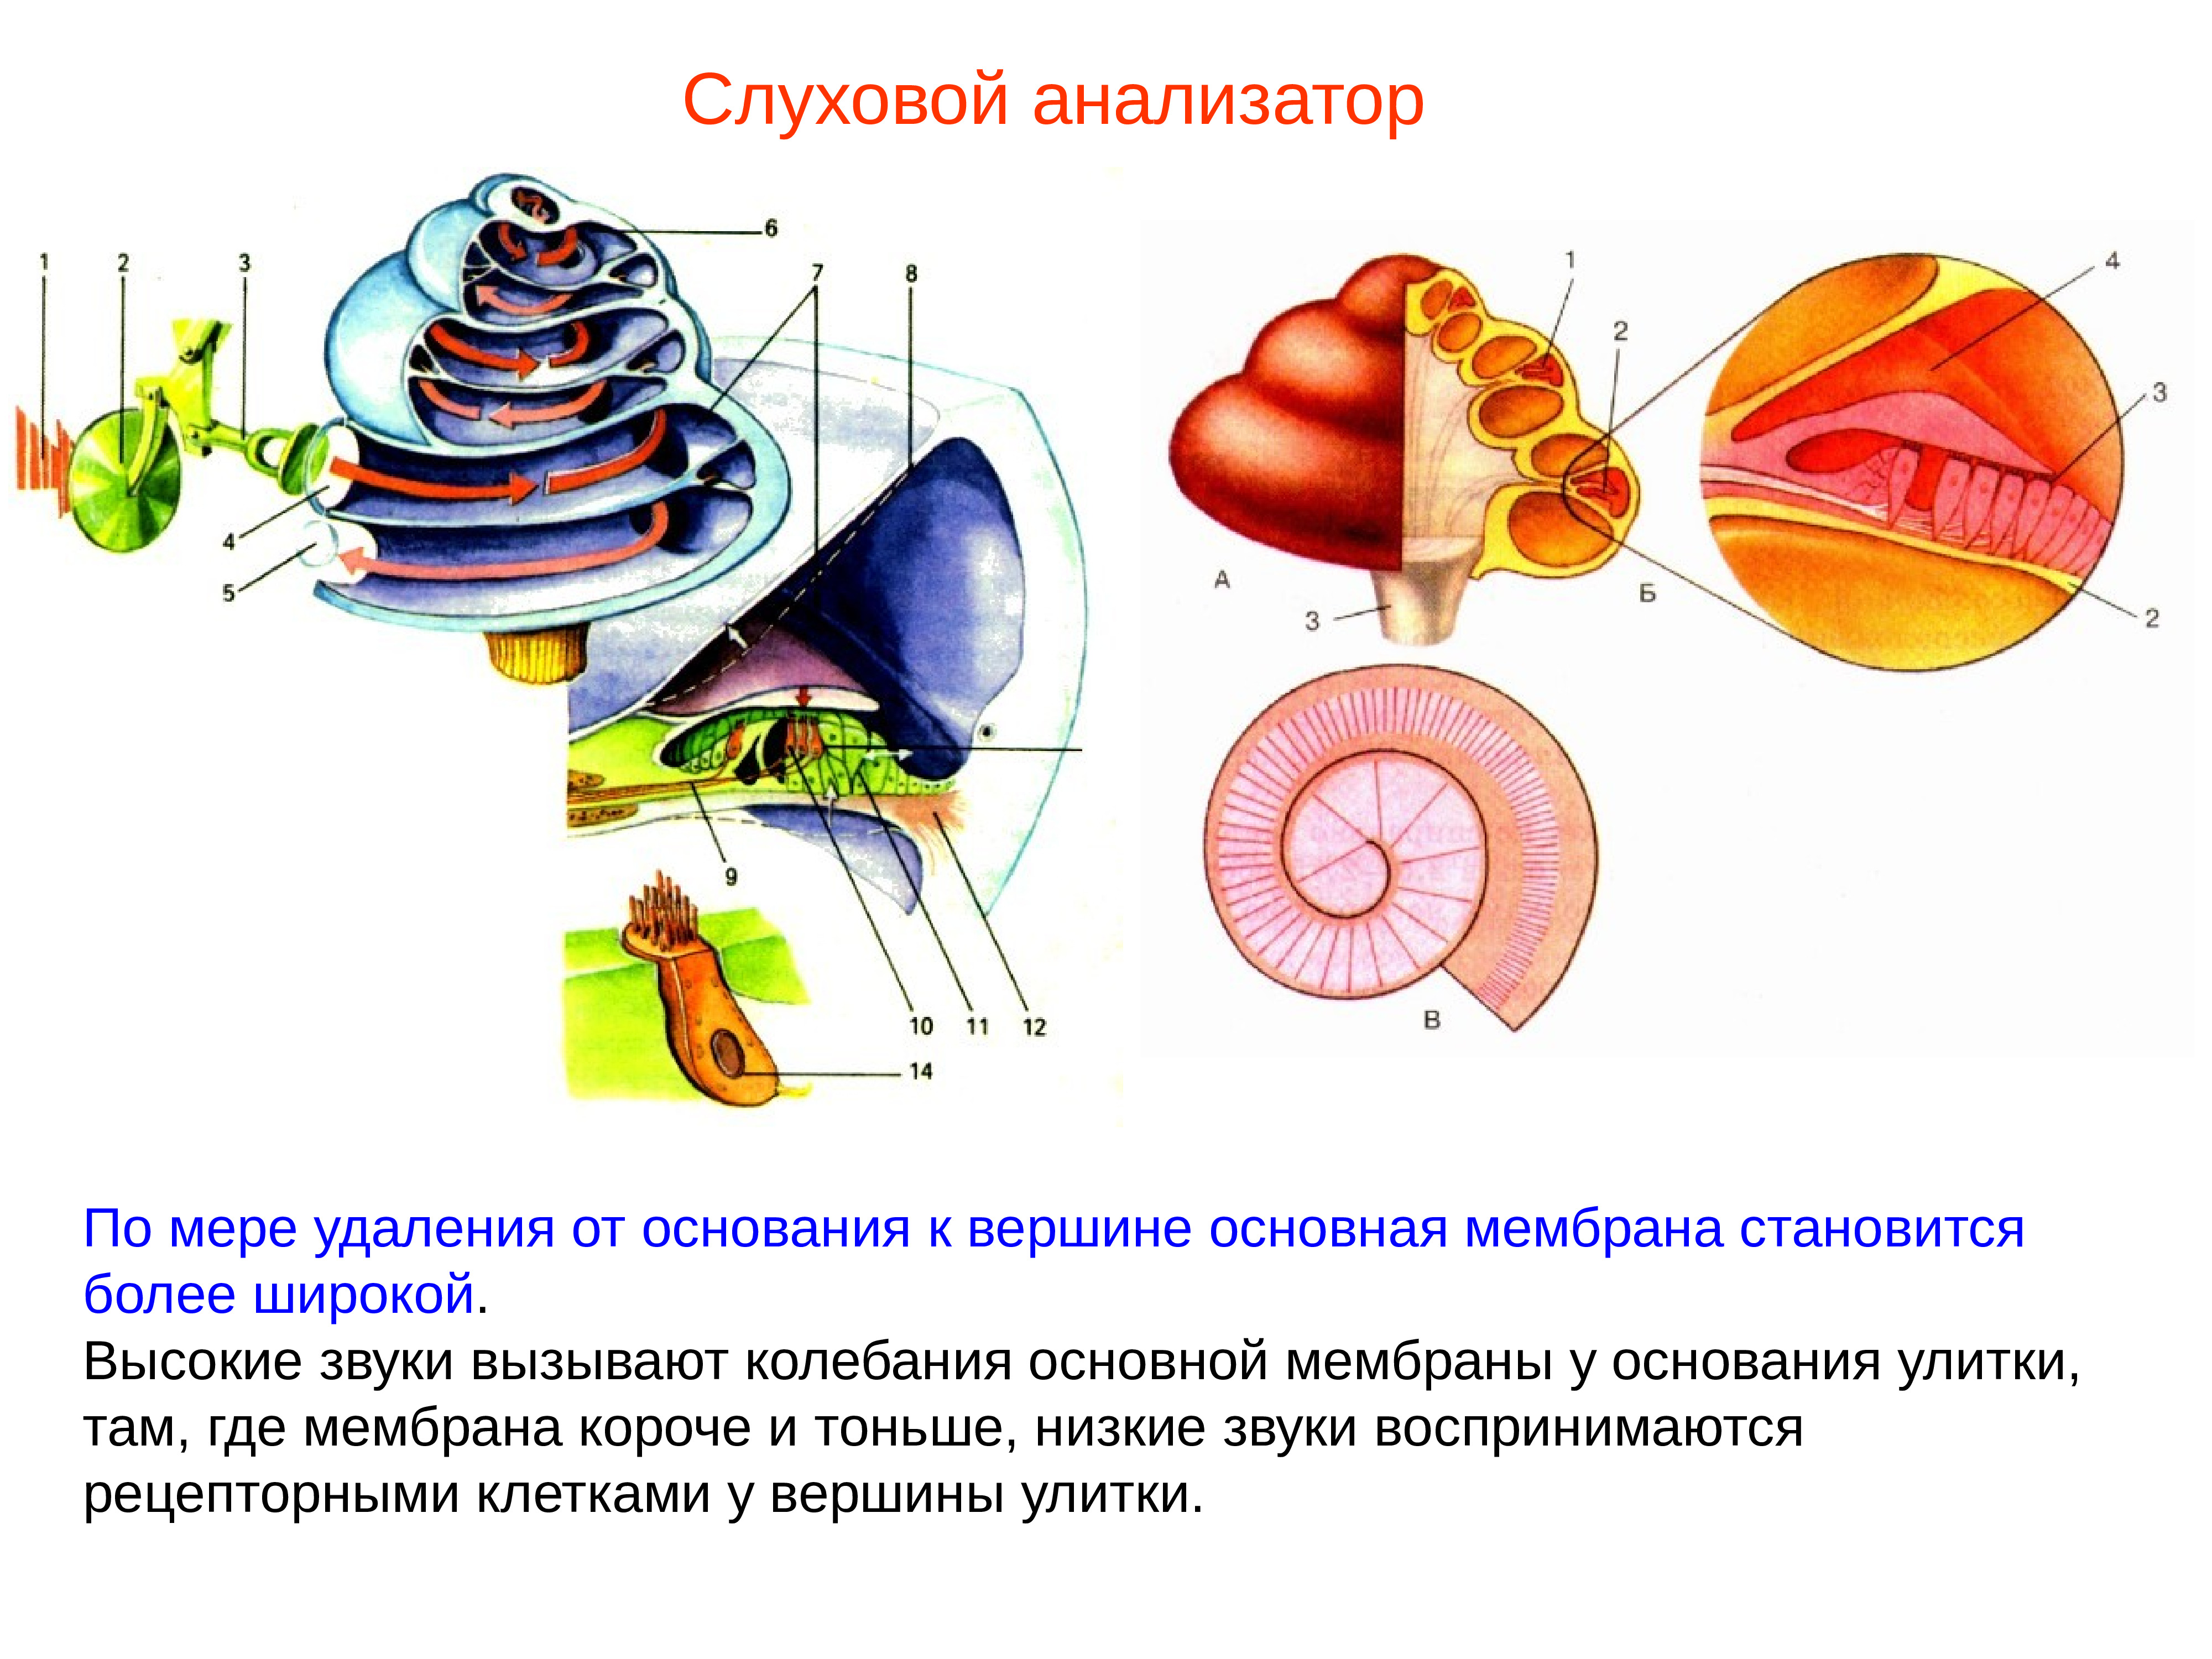 Основная мембрана слухового анализатора